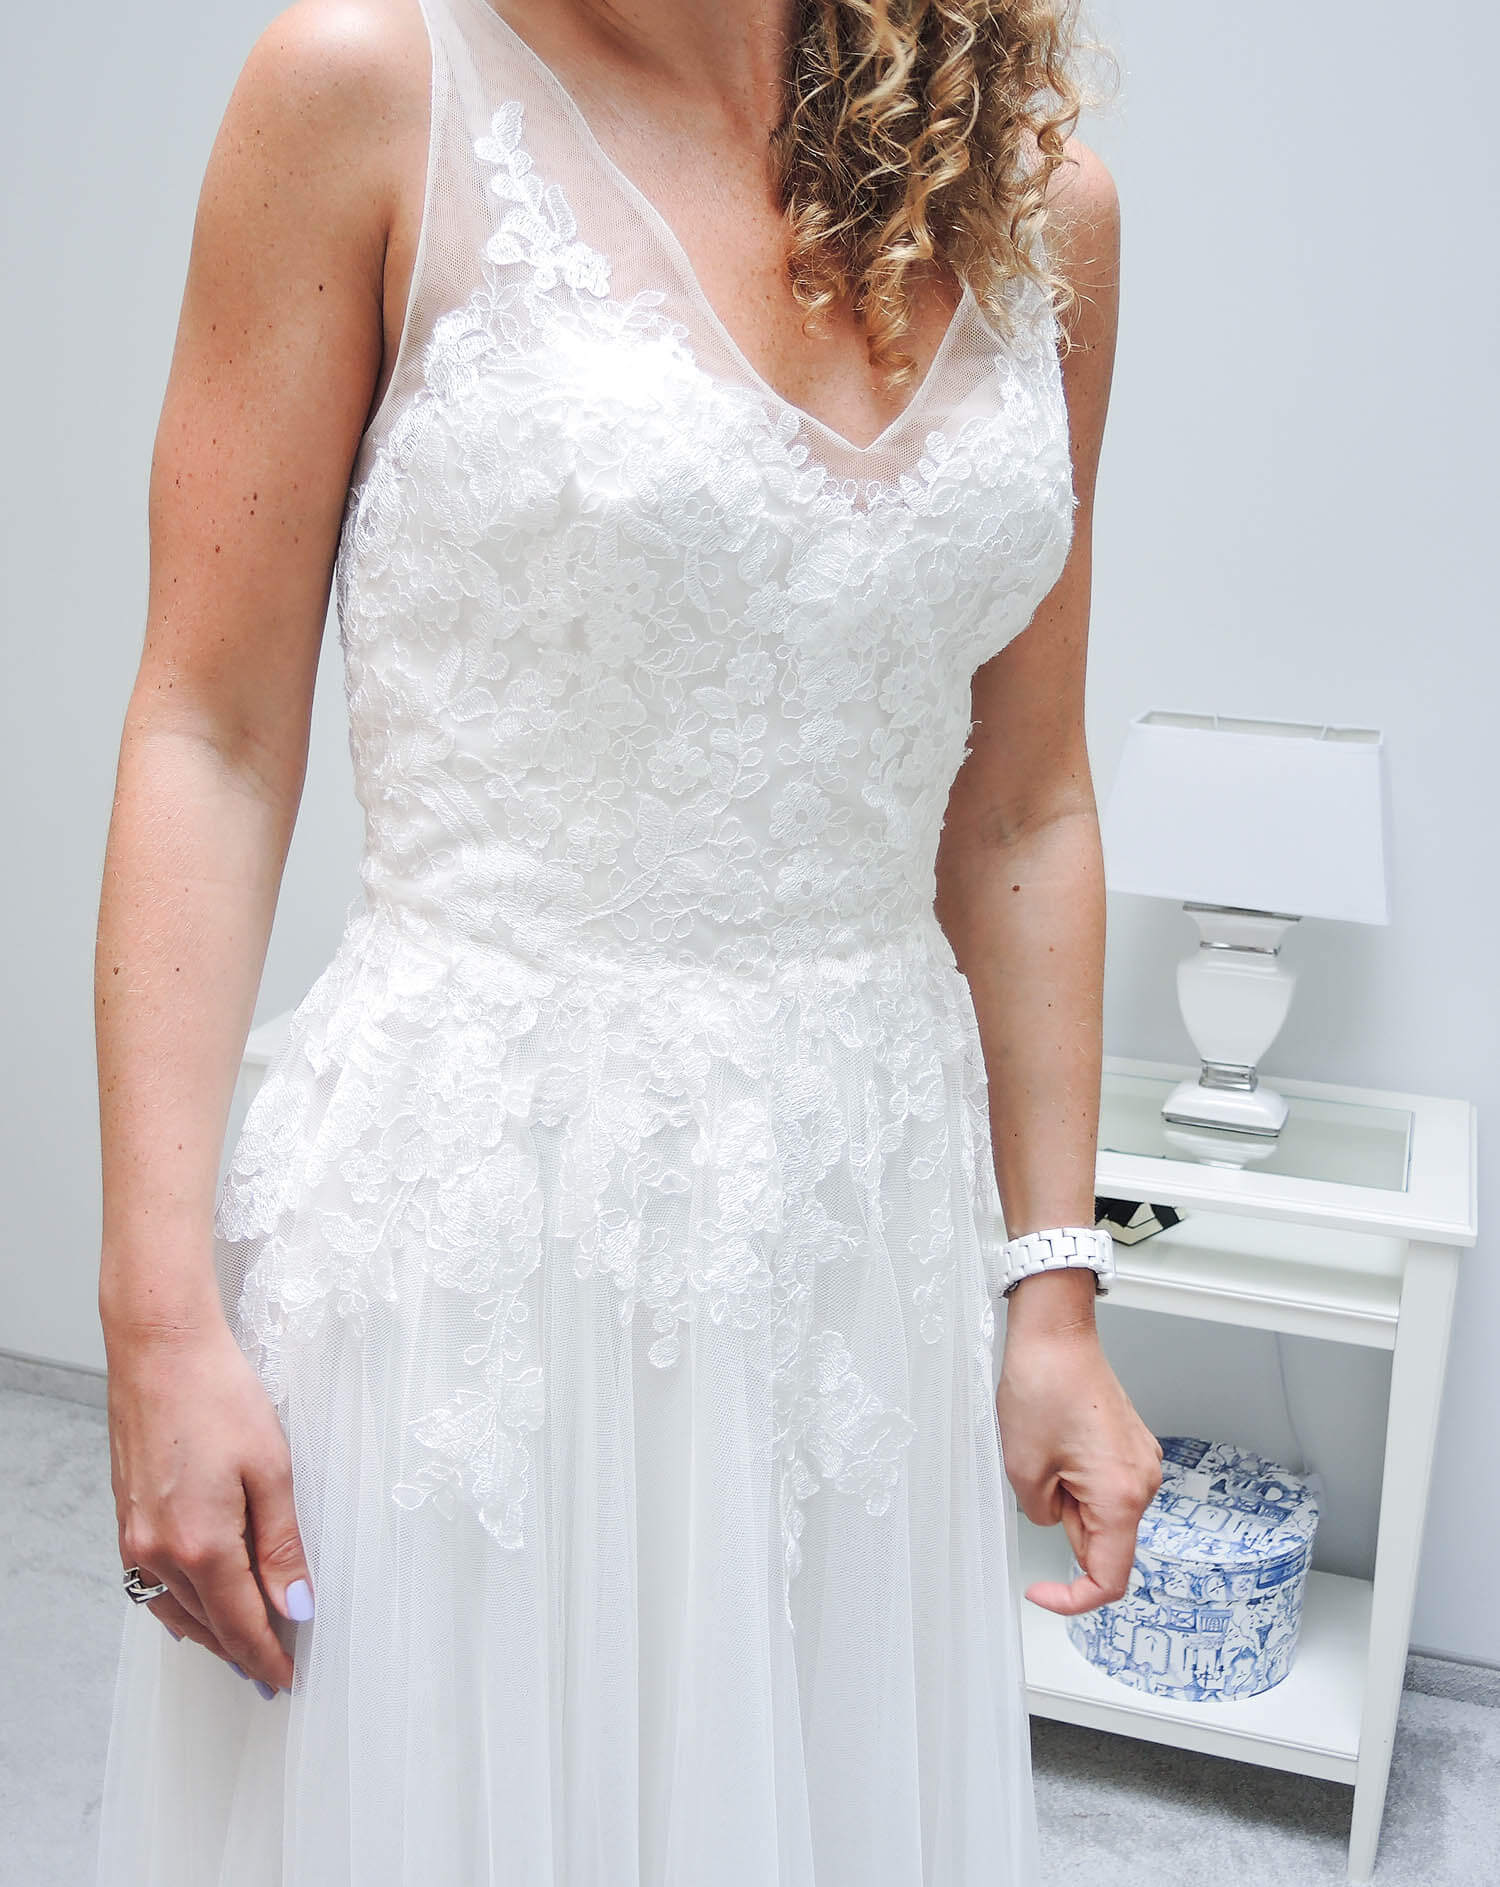 Kationette-fashionblog-lifestyle-Wedding-Update-Bride-Dress-fitting-IamYours-Dusseldorf